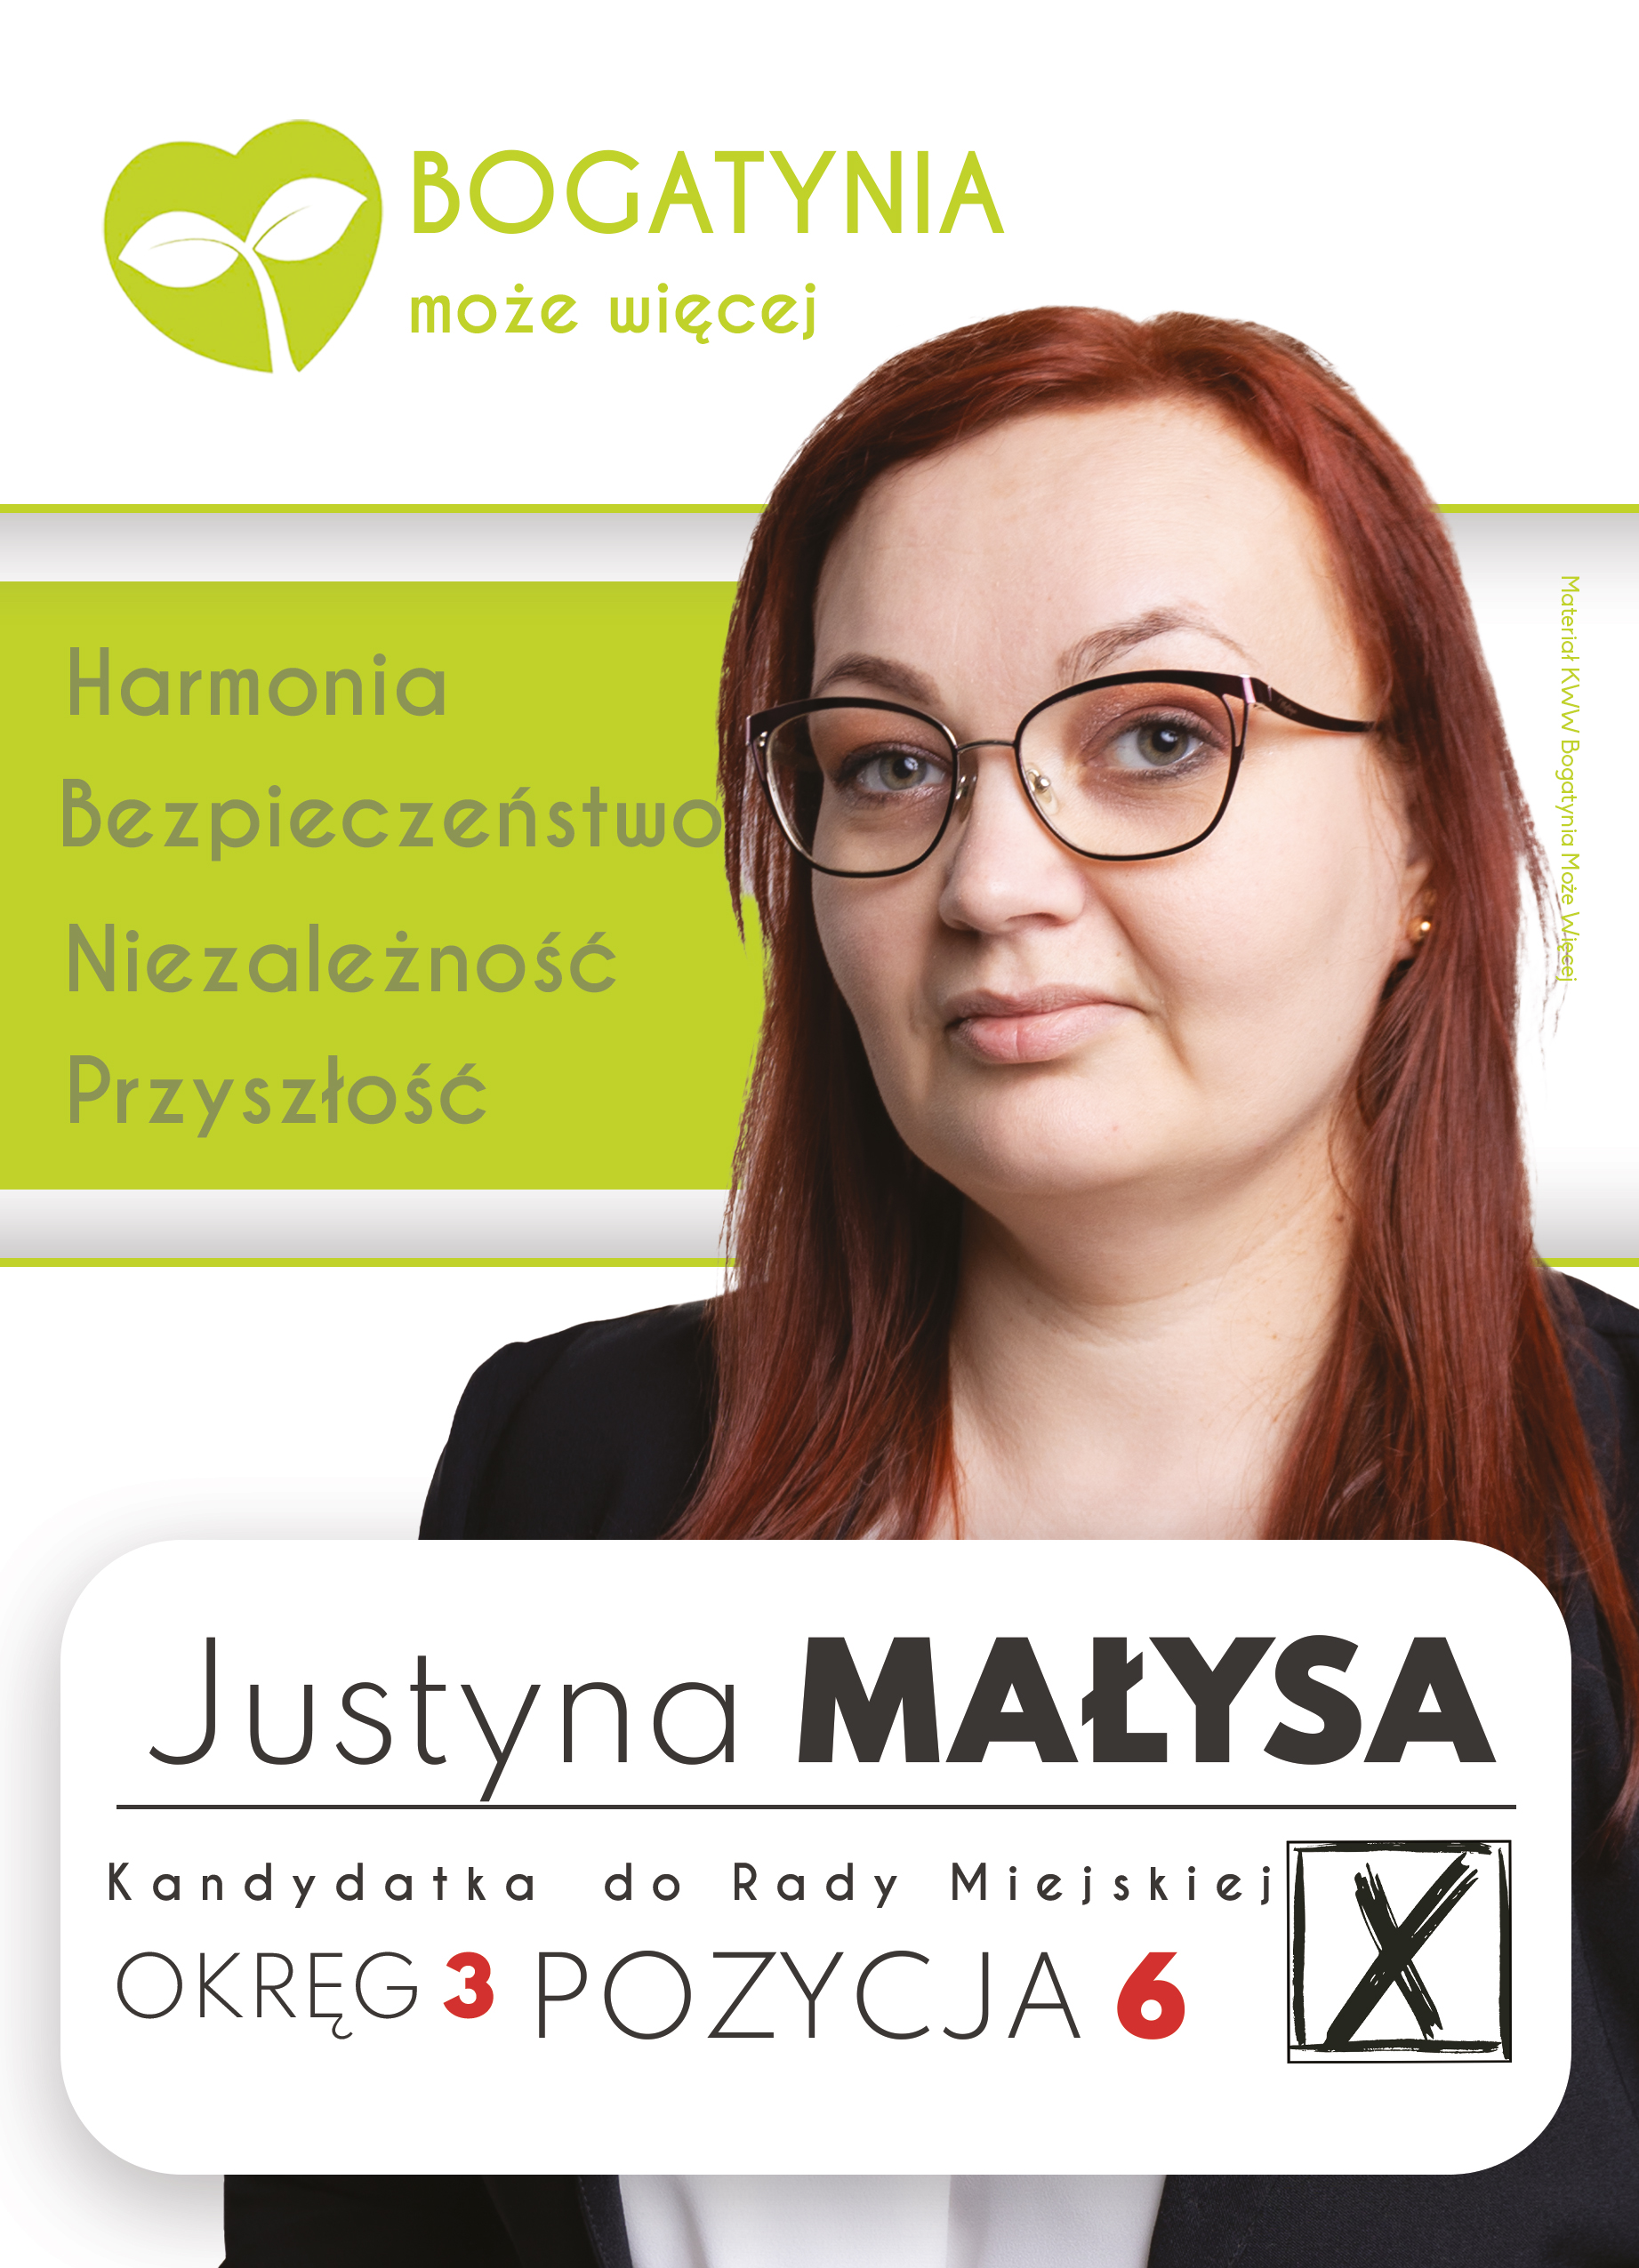 Justyna Małysa - kandydatka do Rady Miejskiej